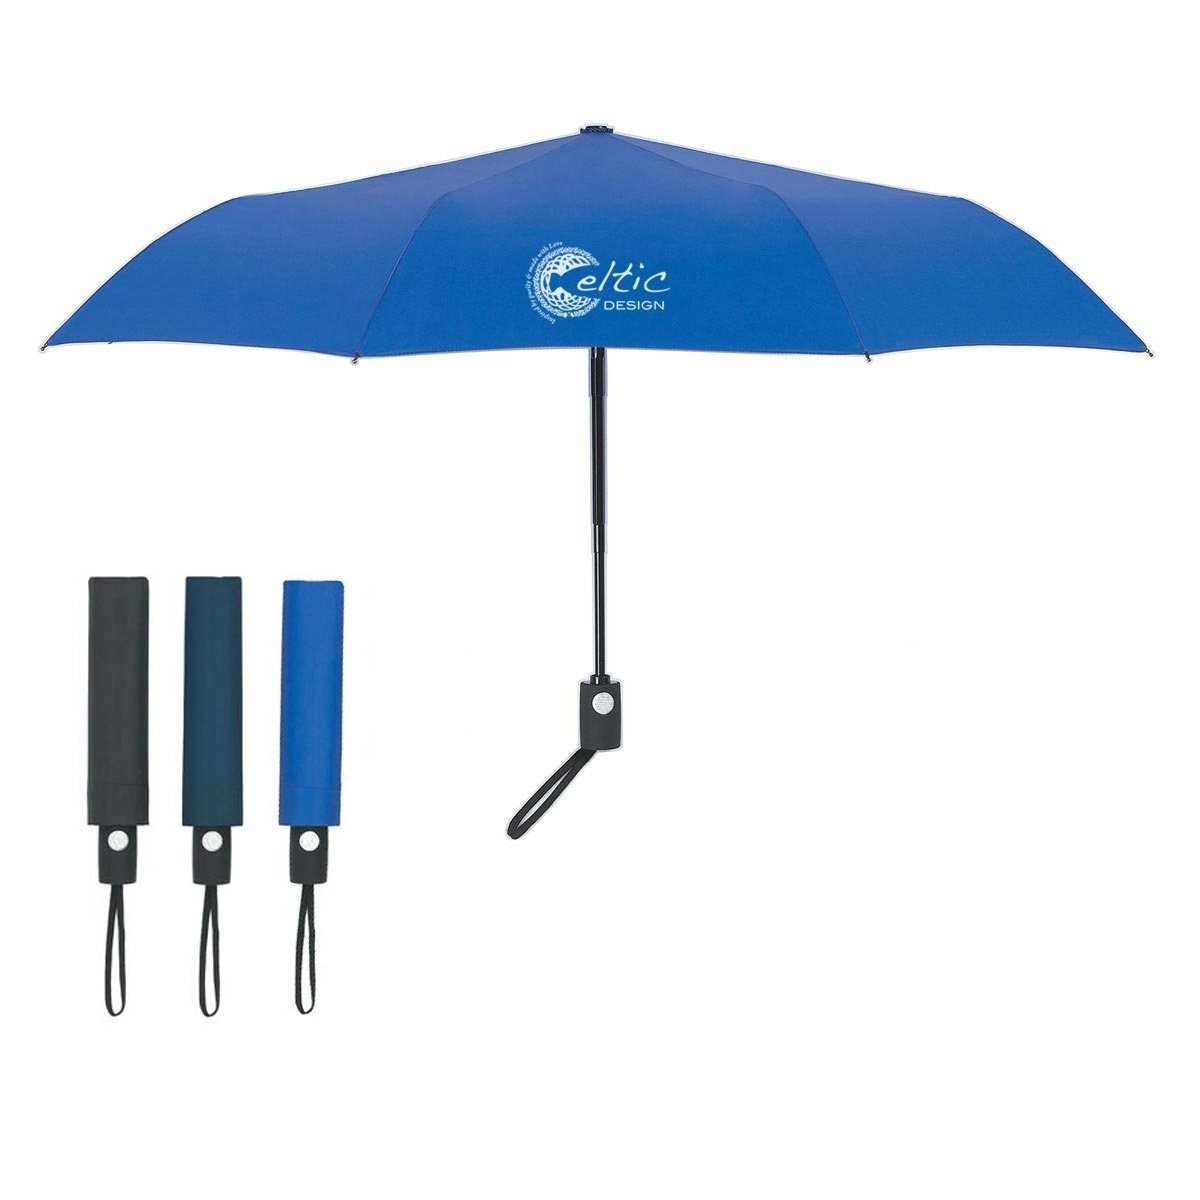 How Are Umbrellas Made?